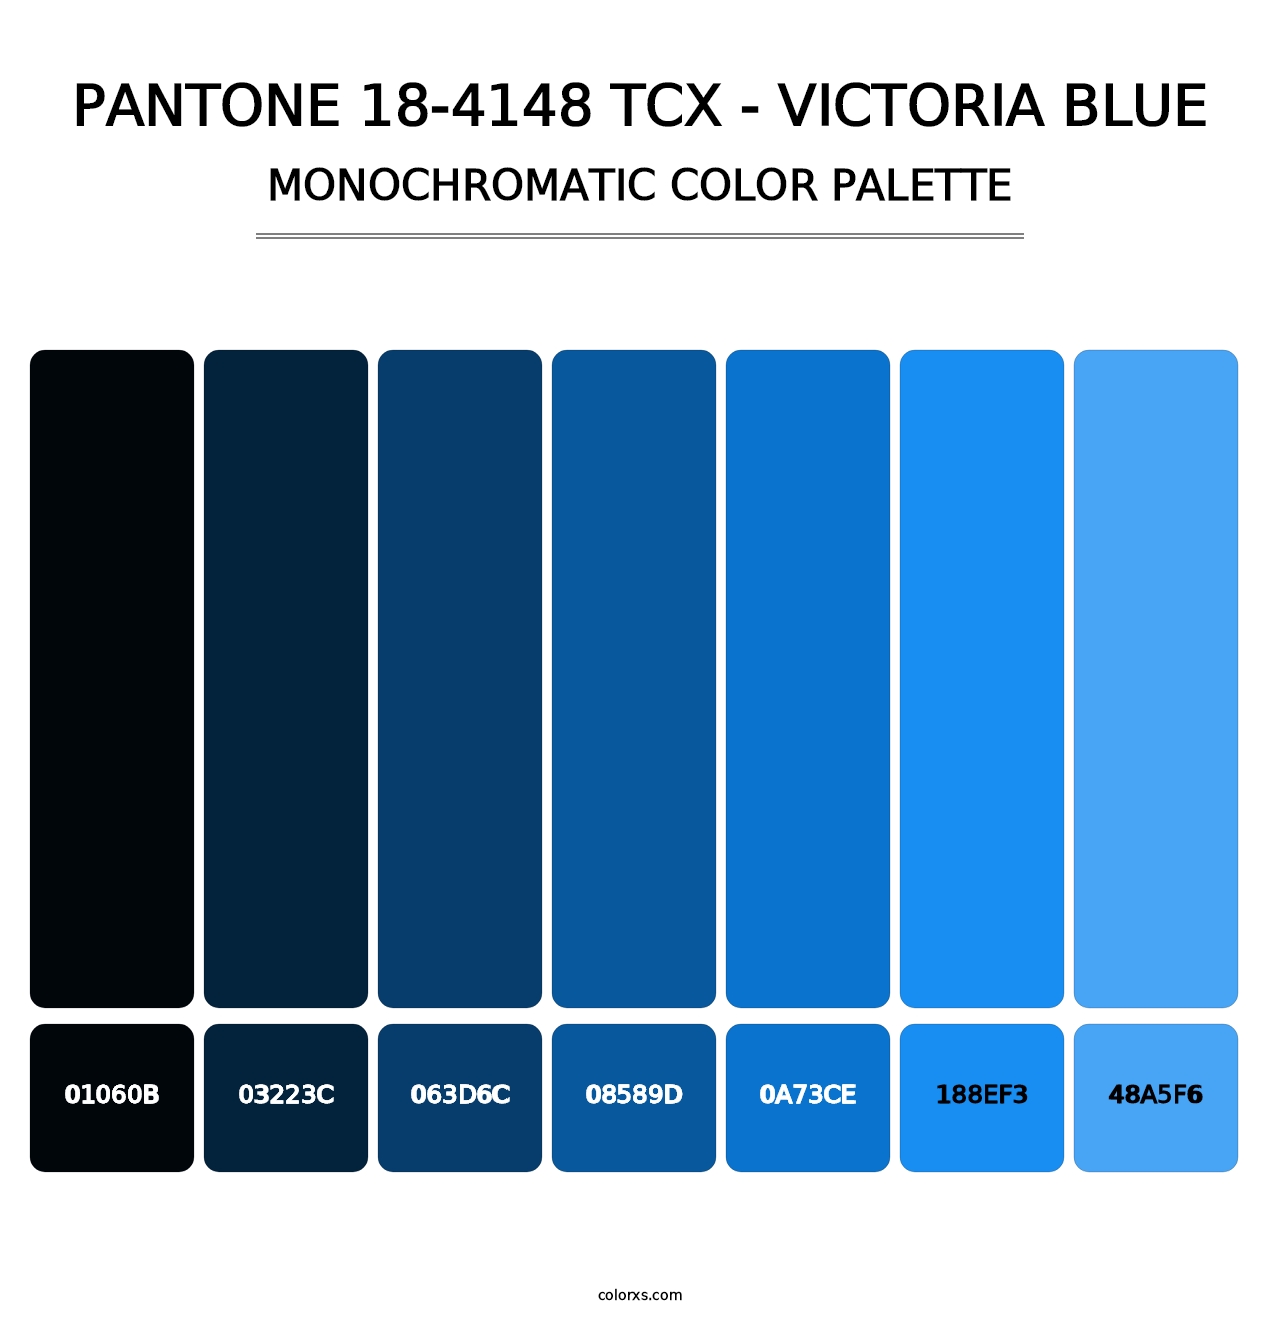 PANTONE 18-4148 TCX - Victoria Blue - Monochromatic Color Palette